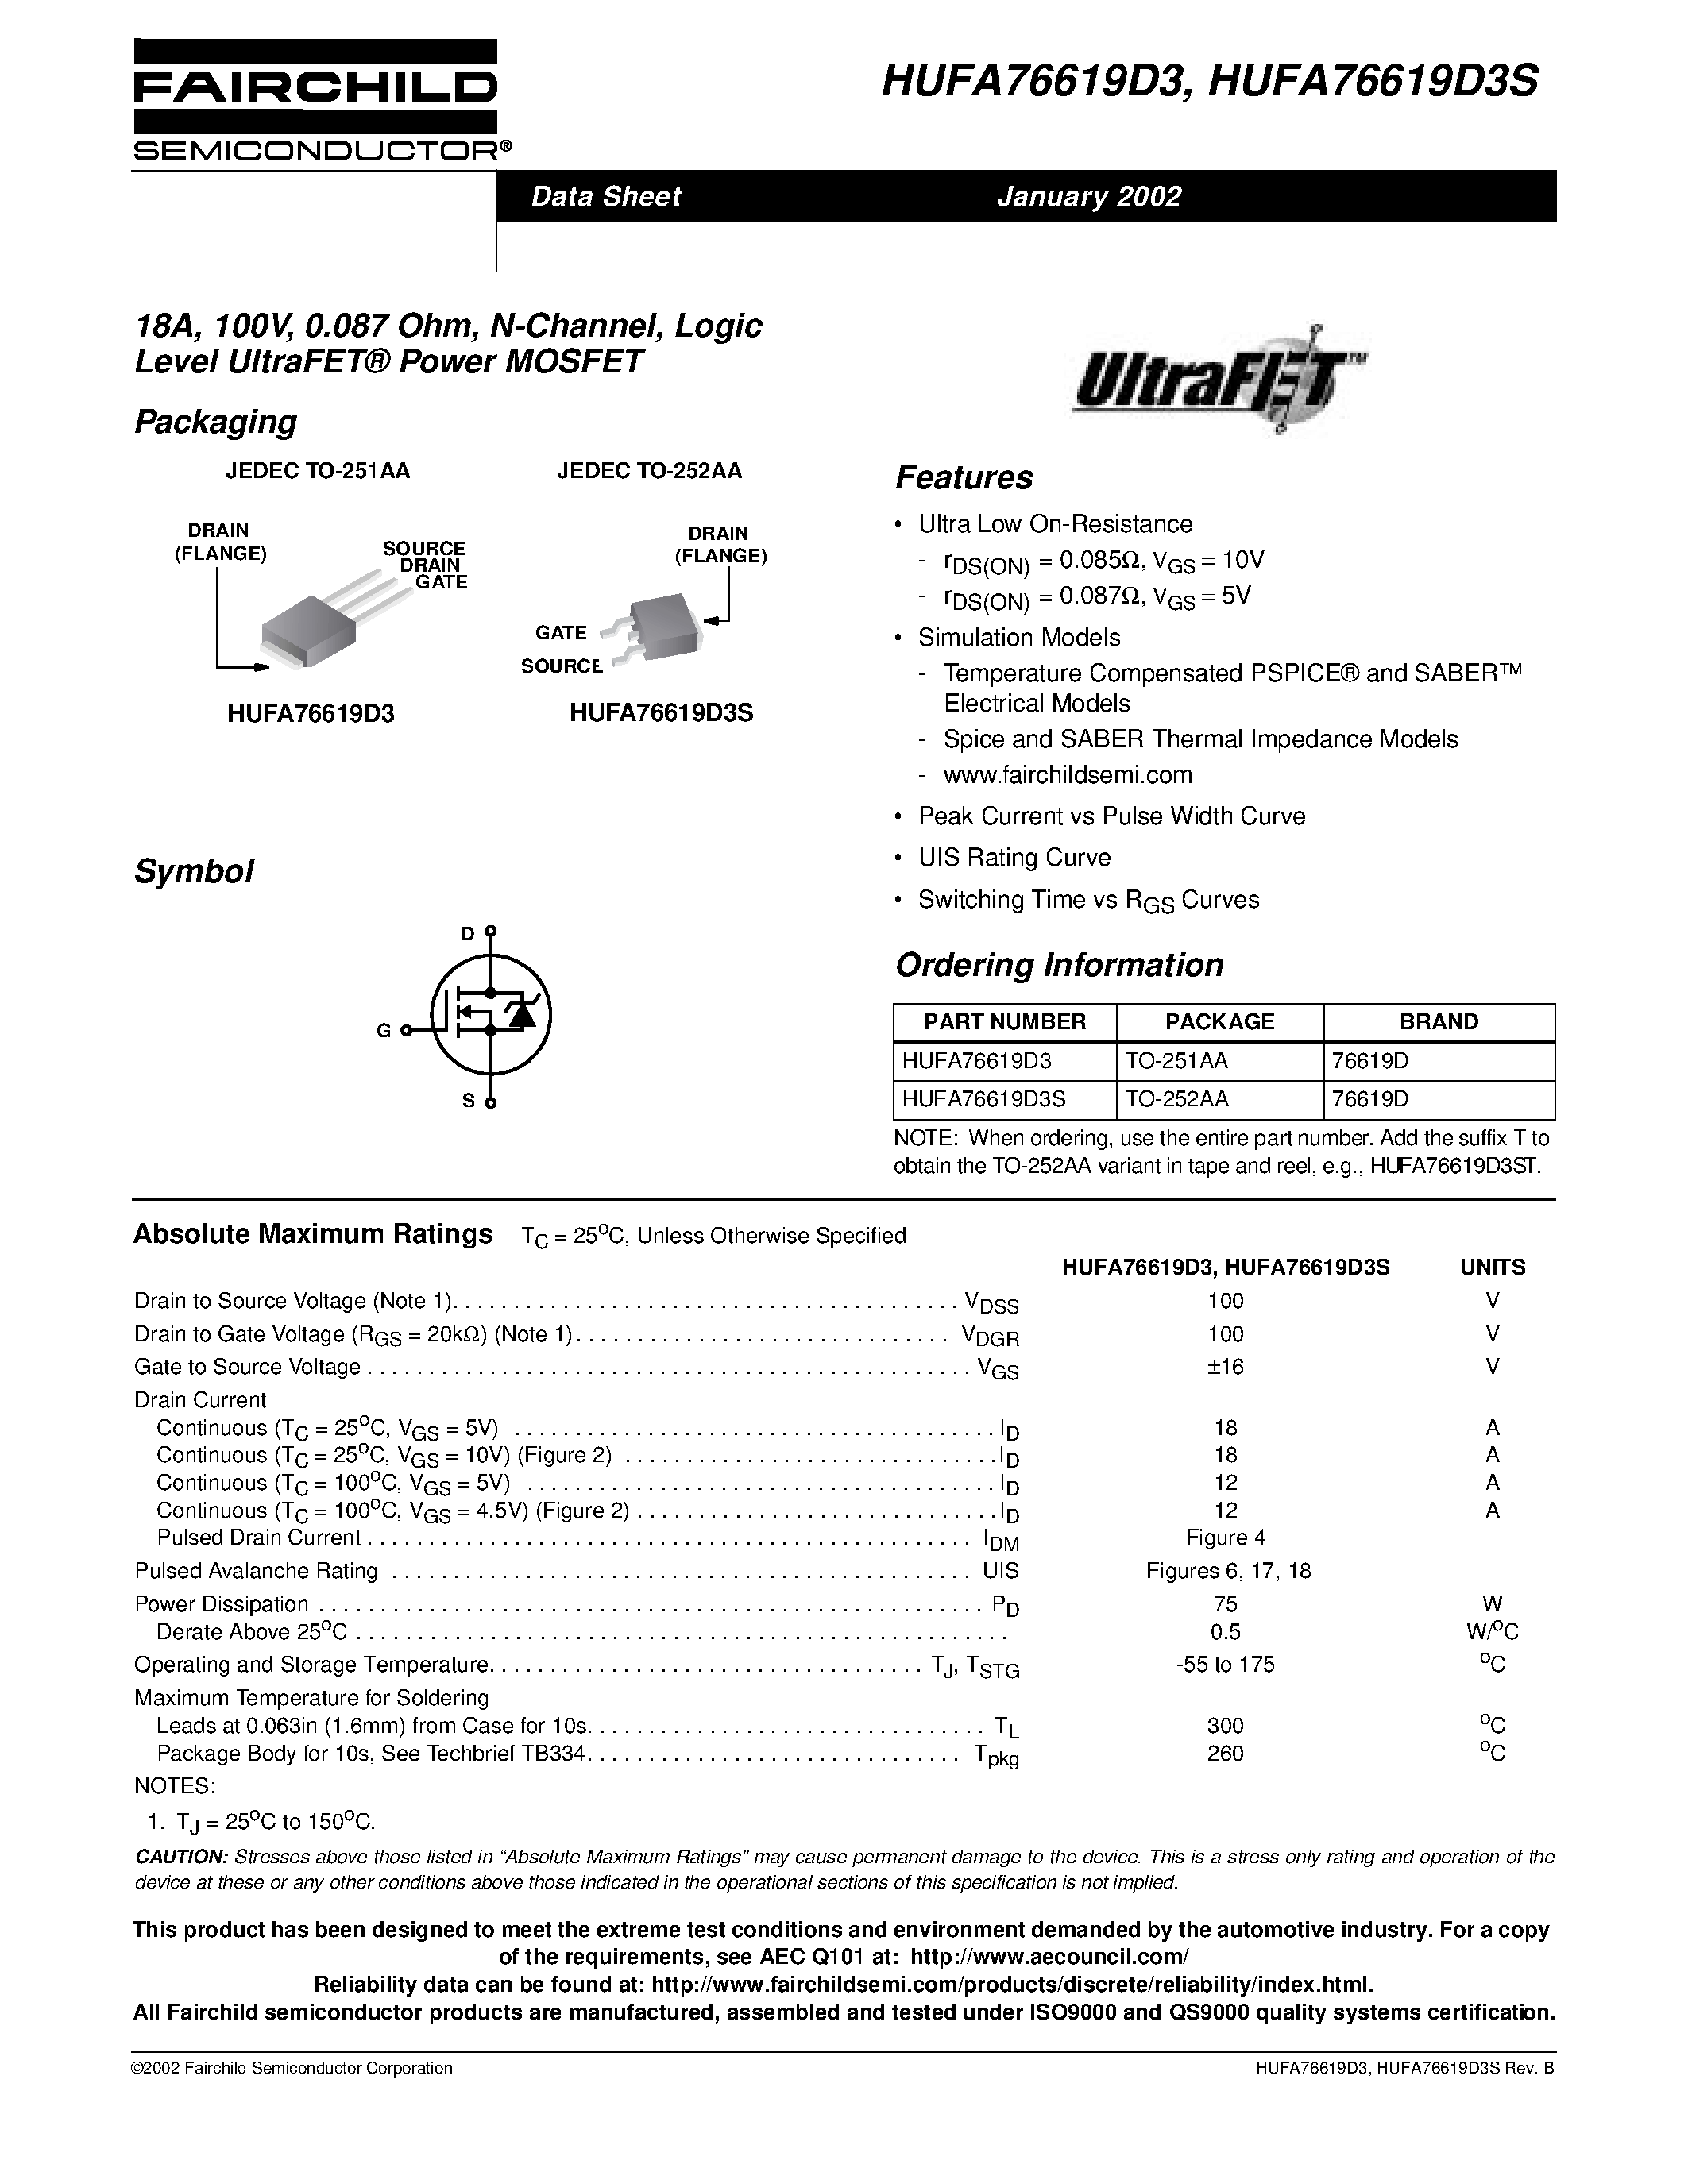 Даташит HUFA76619D3 - 18A/ 100V/ 0.087 Ohm/ N-Channel/ Logic Level UltraFET Power MOSFET страница 1